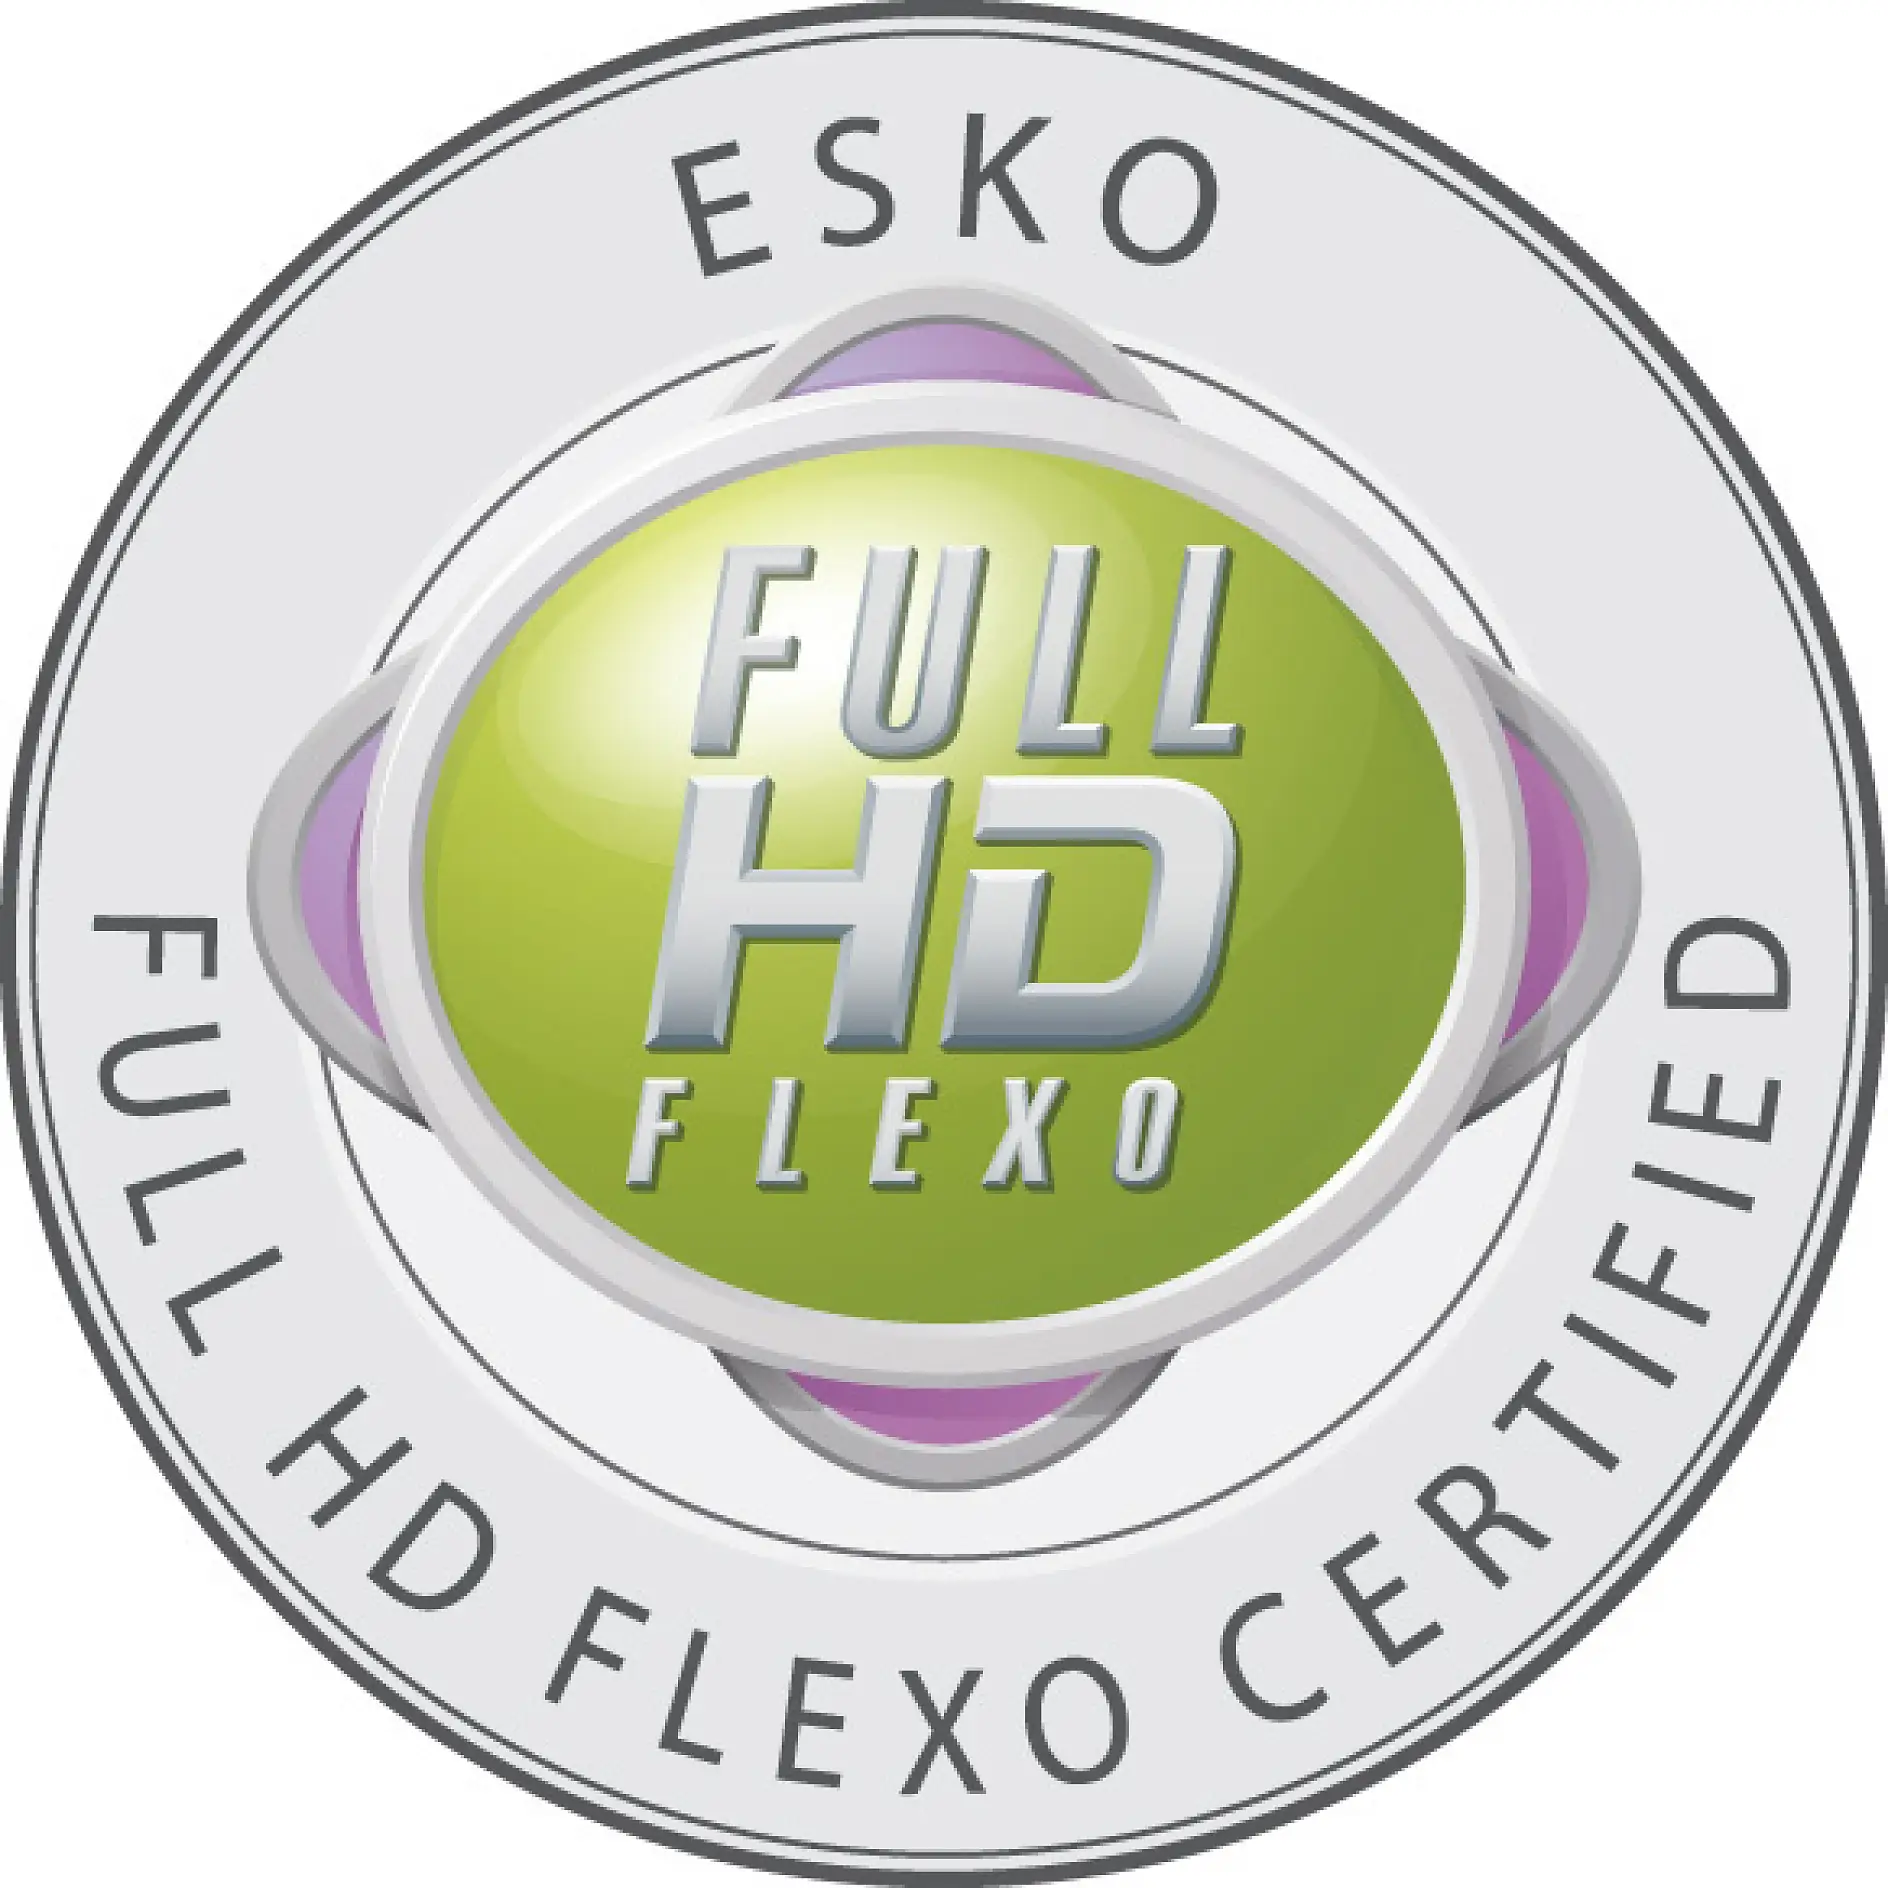 Pouze certifikované společnosti smí nést odznak Full HD Flexo